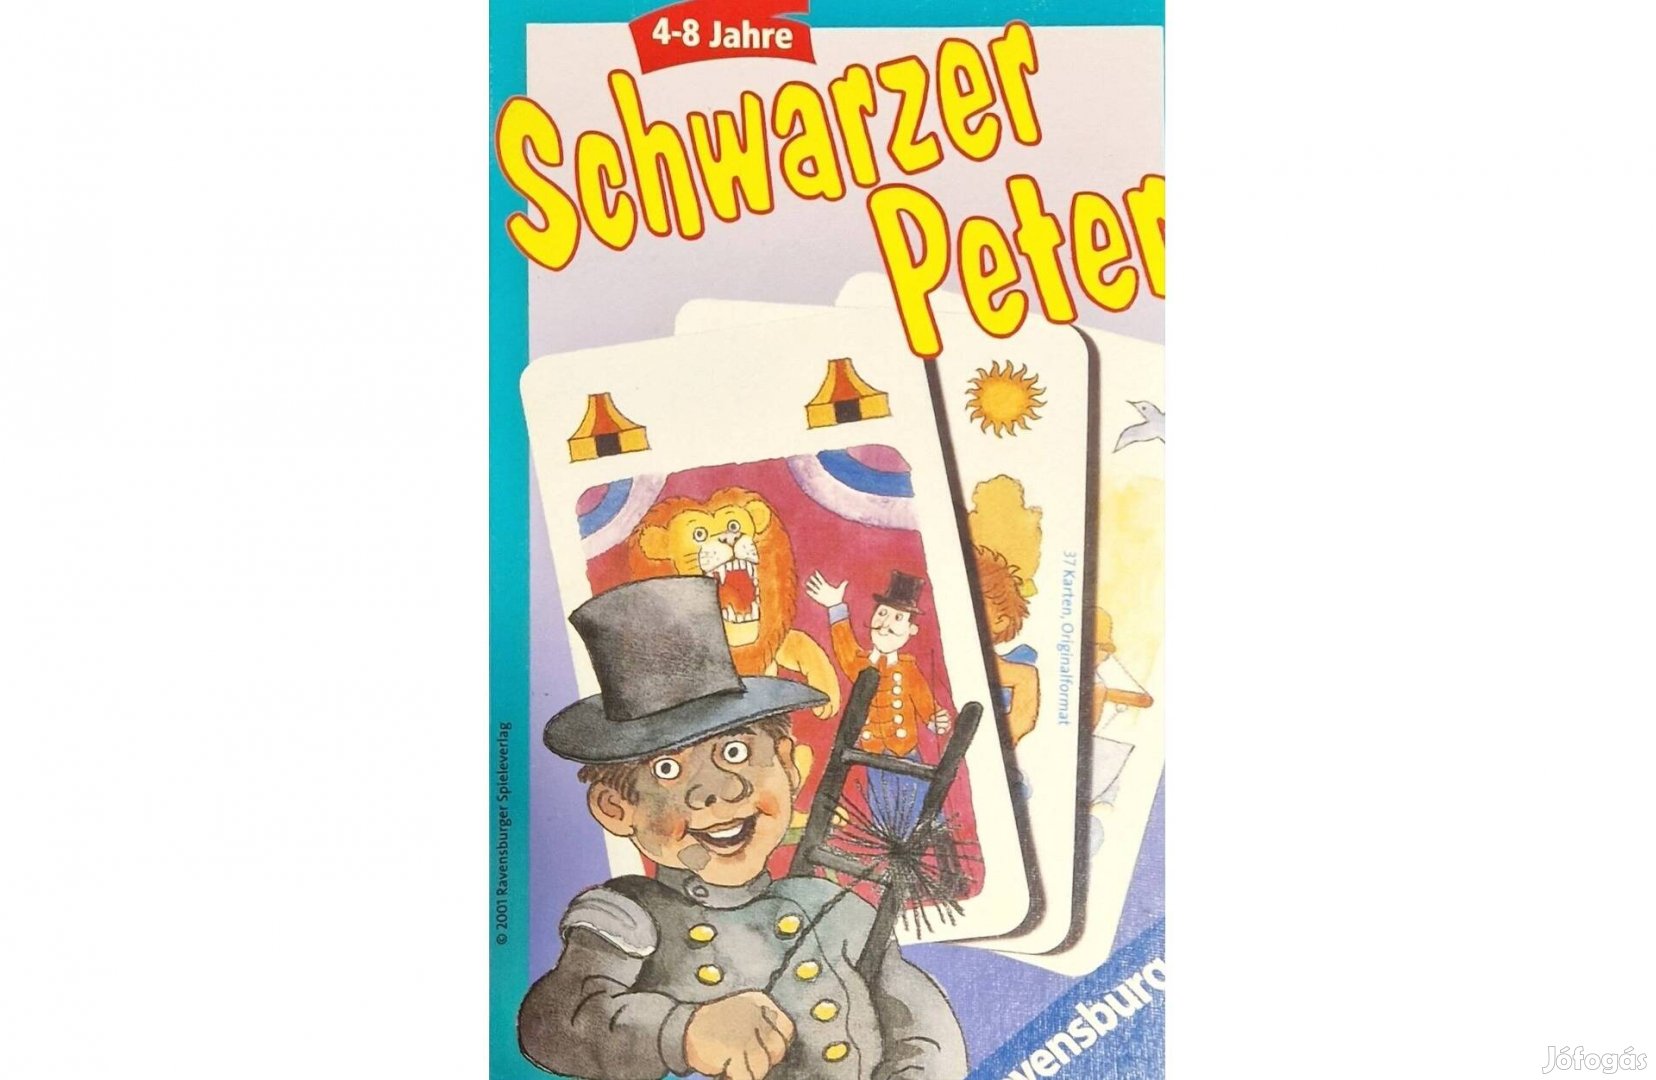 Schwarzer Peter társasjáték